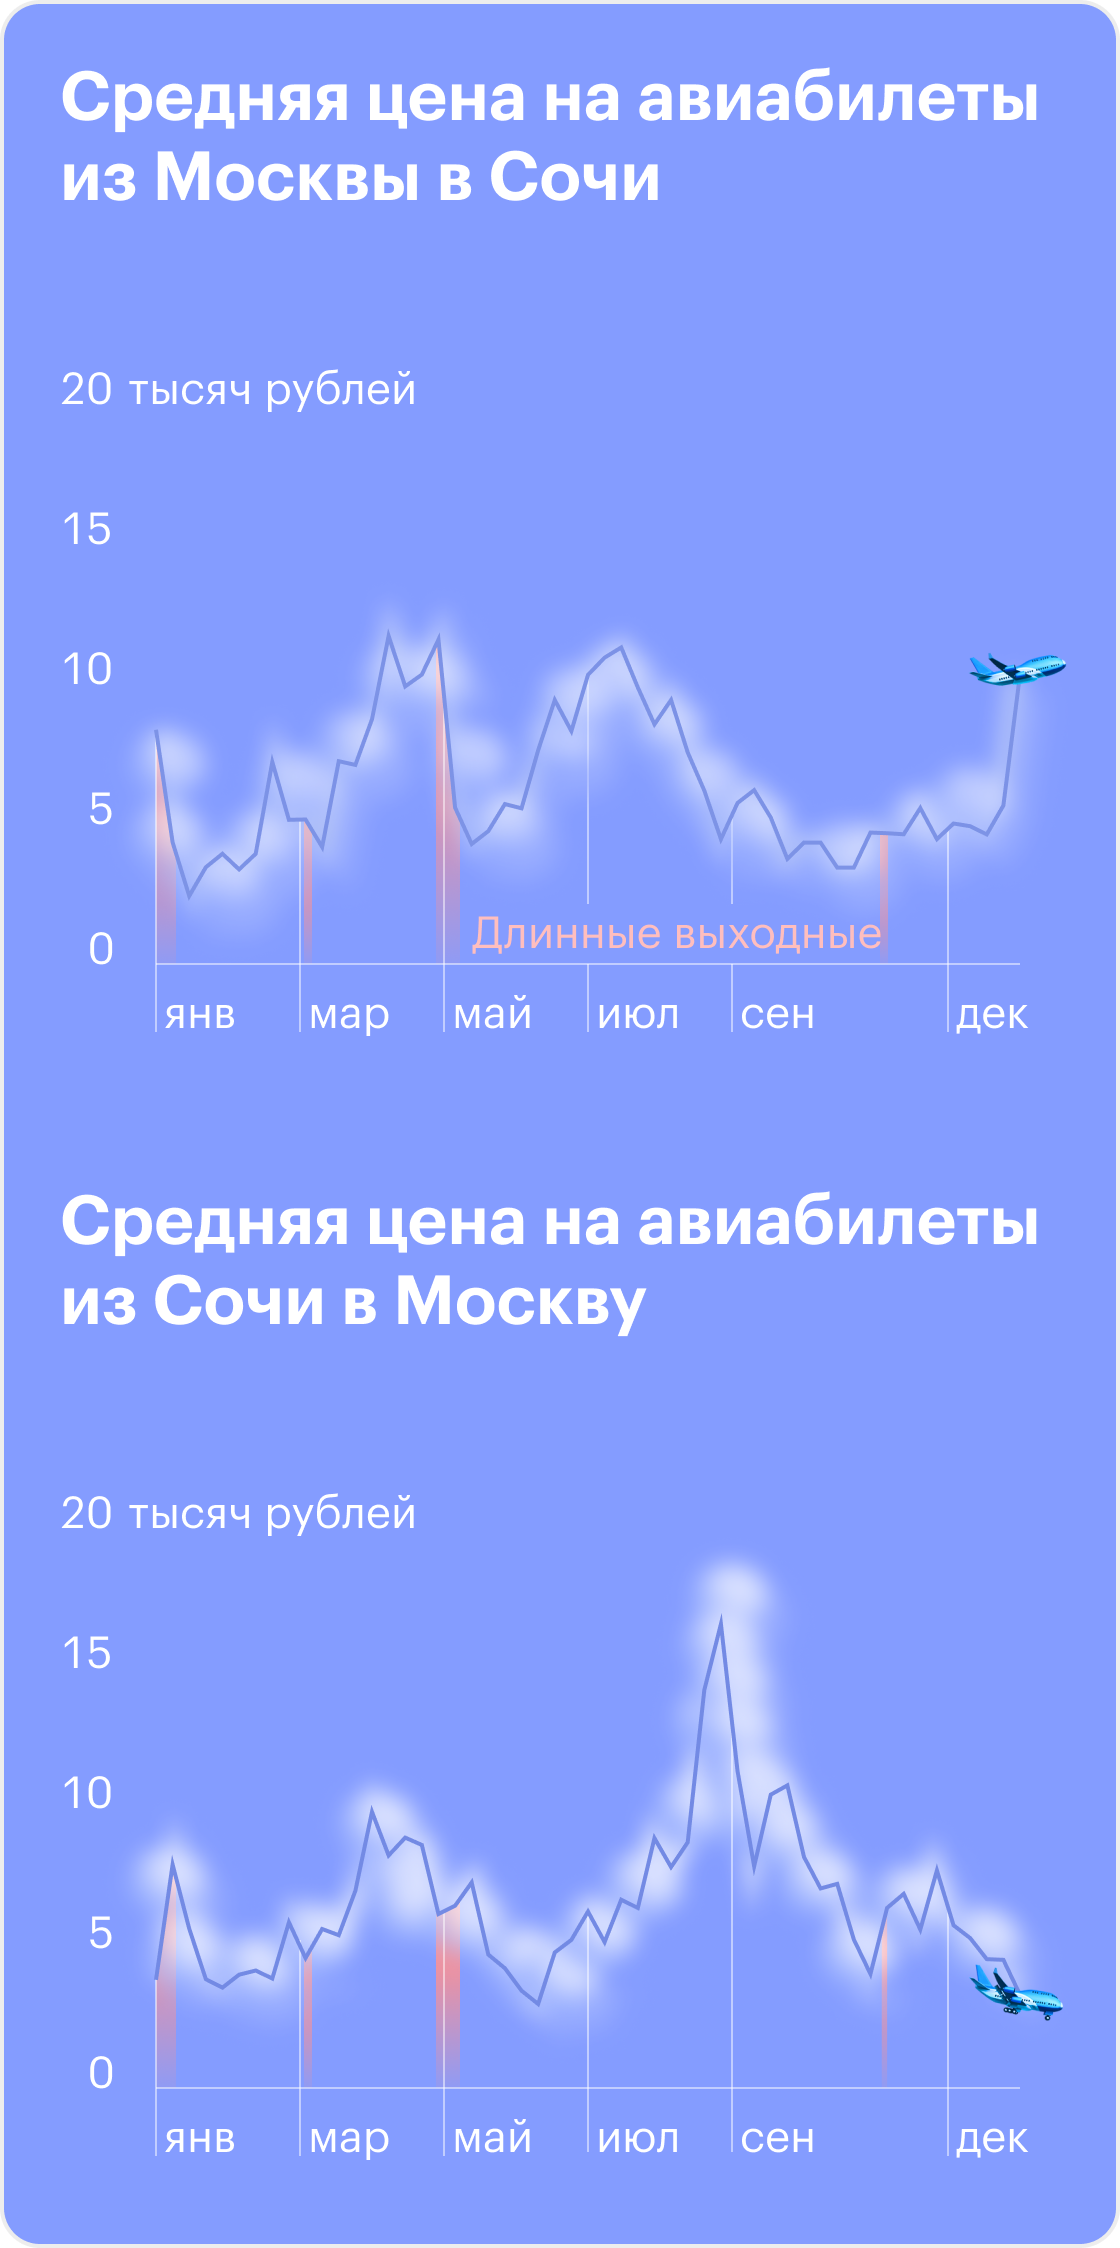 Динамика цен на авиабилеты по маршруту Москва — Сочи и Москва — Минеральные Воды. Источник: Tinkoff Data, расчеты Т⁠—⁠Ж